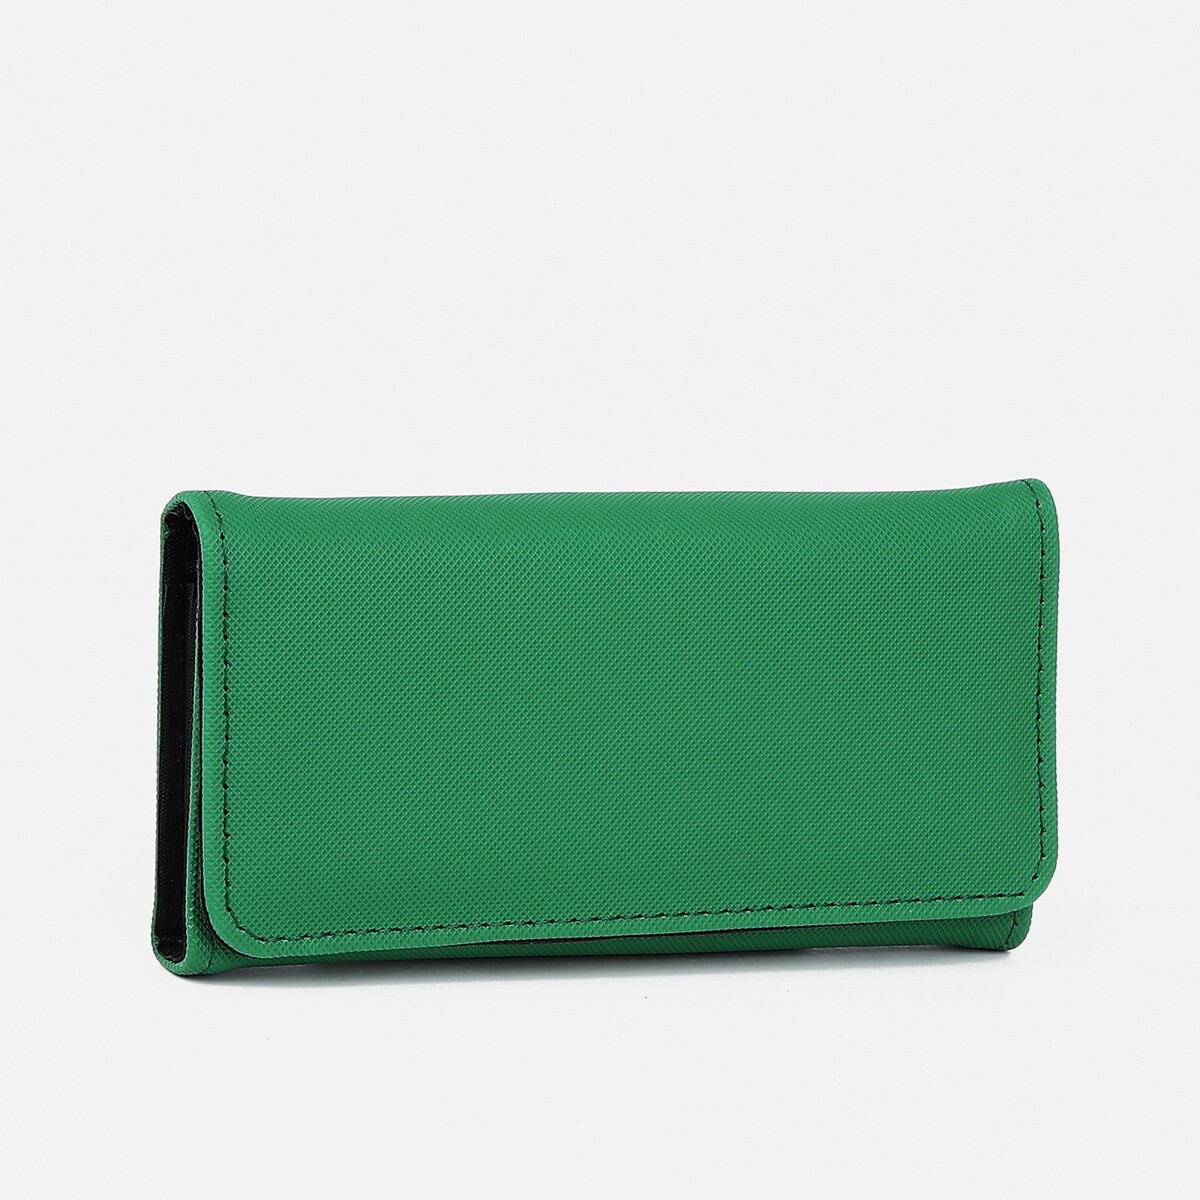 Кошелек женский на магните, цвет зеленый сумка клатч на магните зеленый